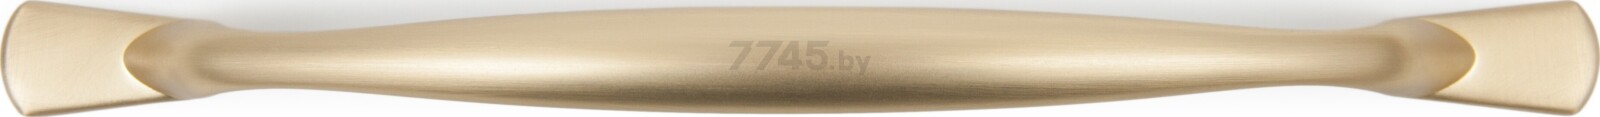 Ручка мебельная скоба BOYARD Neoline RS220SG.4/128 сатиновое золото - Фото 3